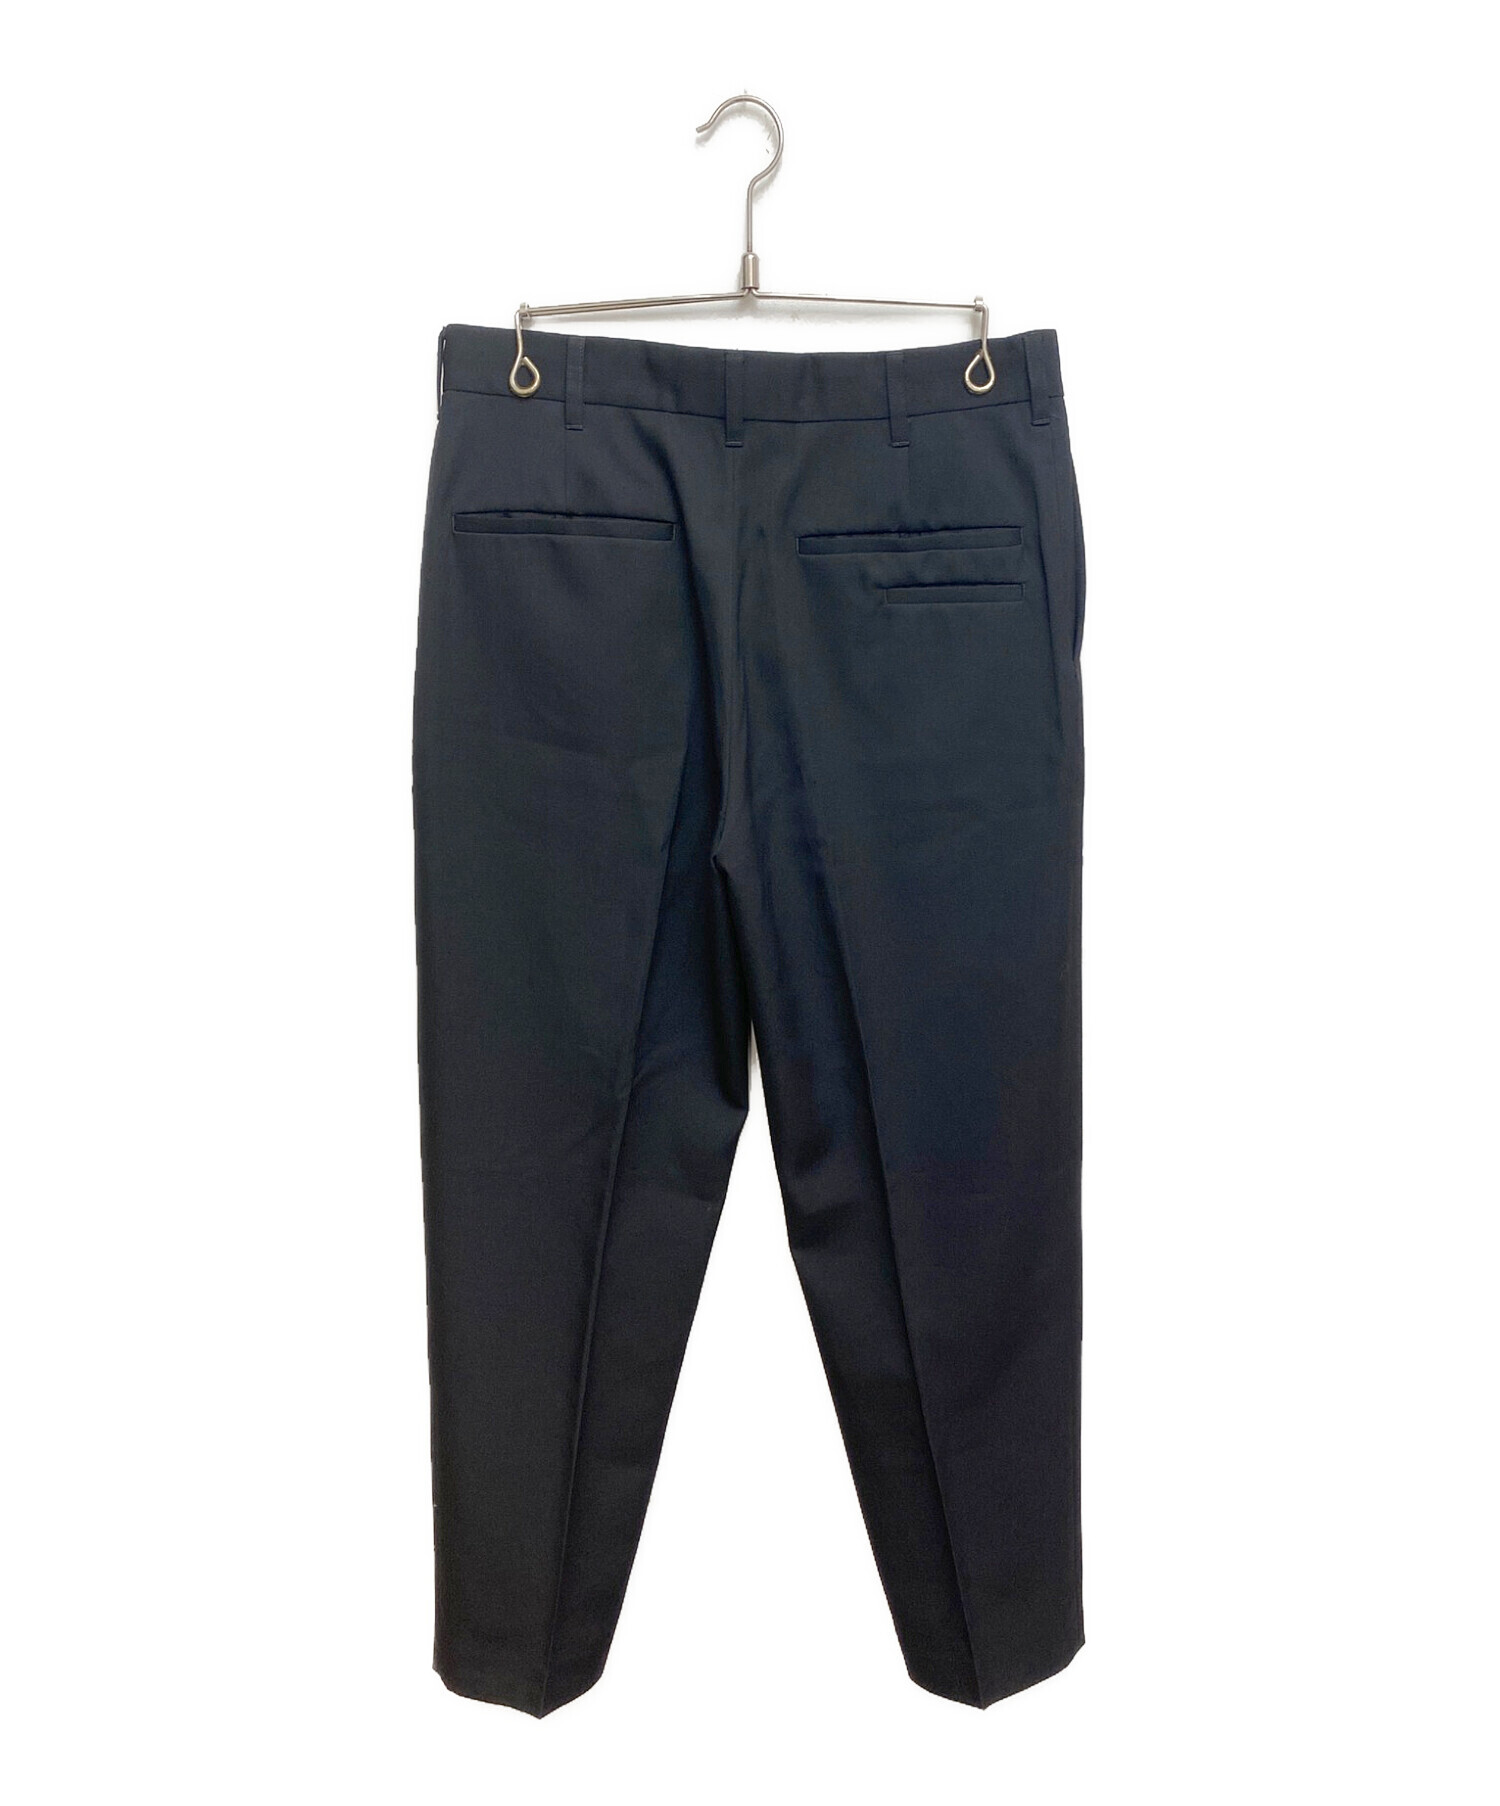 th products (ティーエイチプロダクツ) MARC / Tuck Tapered Pants ブラック サイズ:46